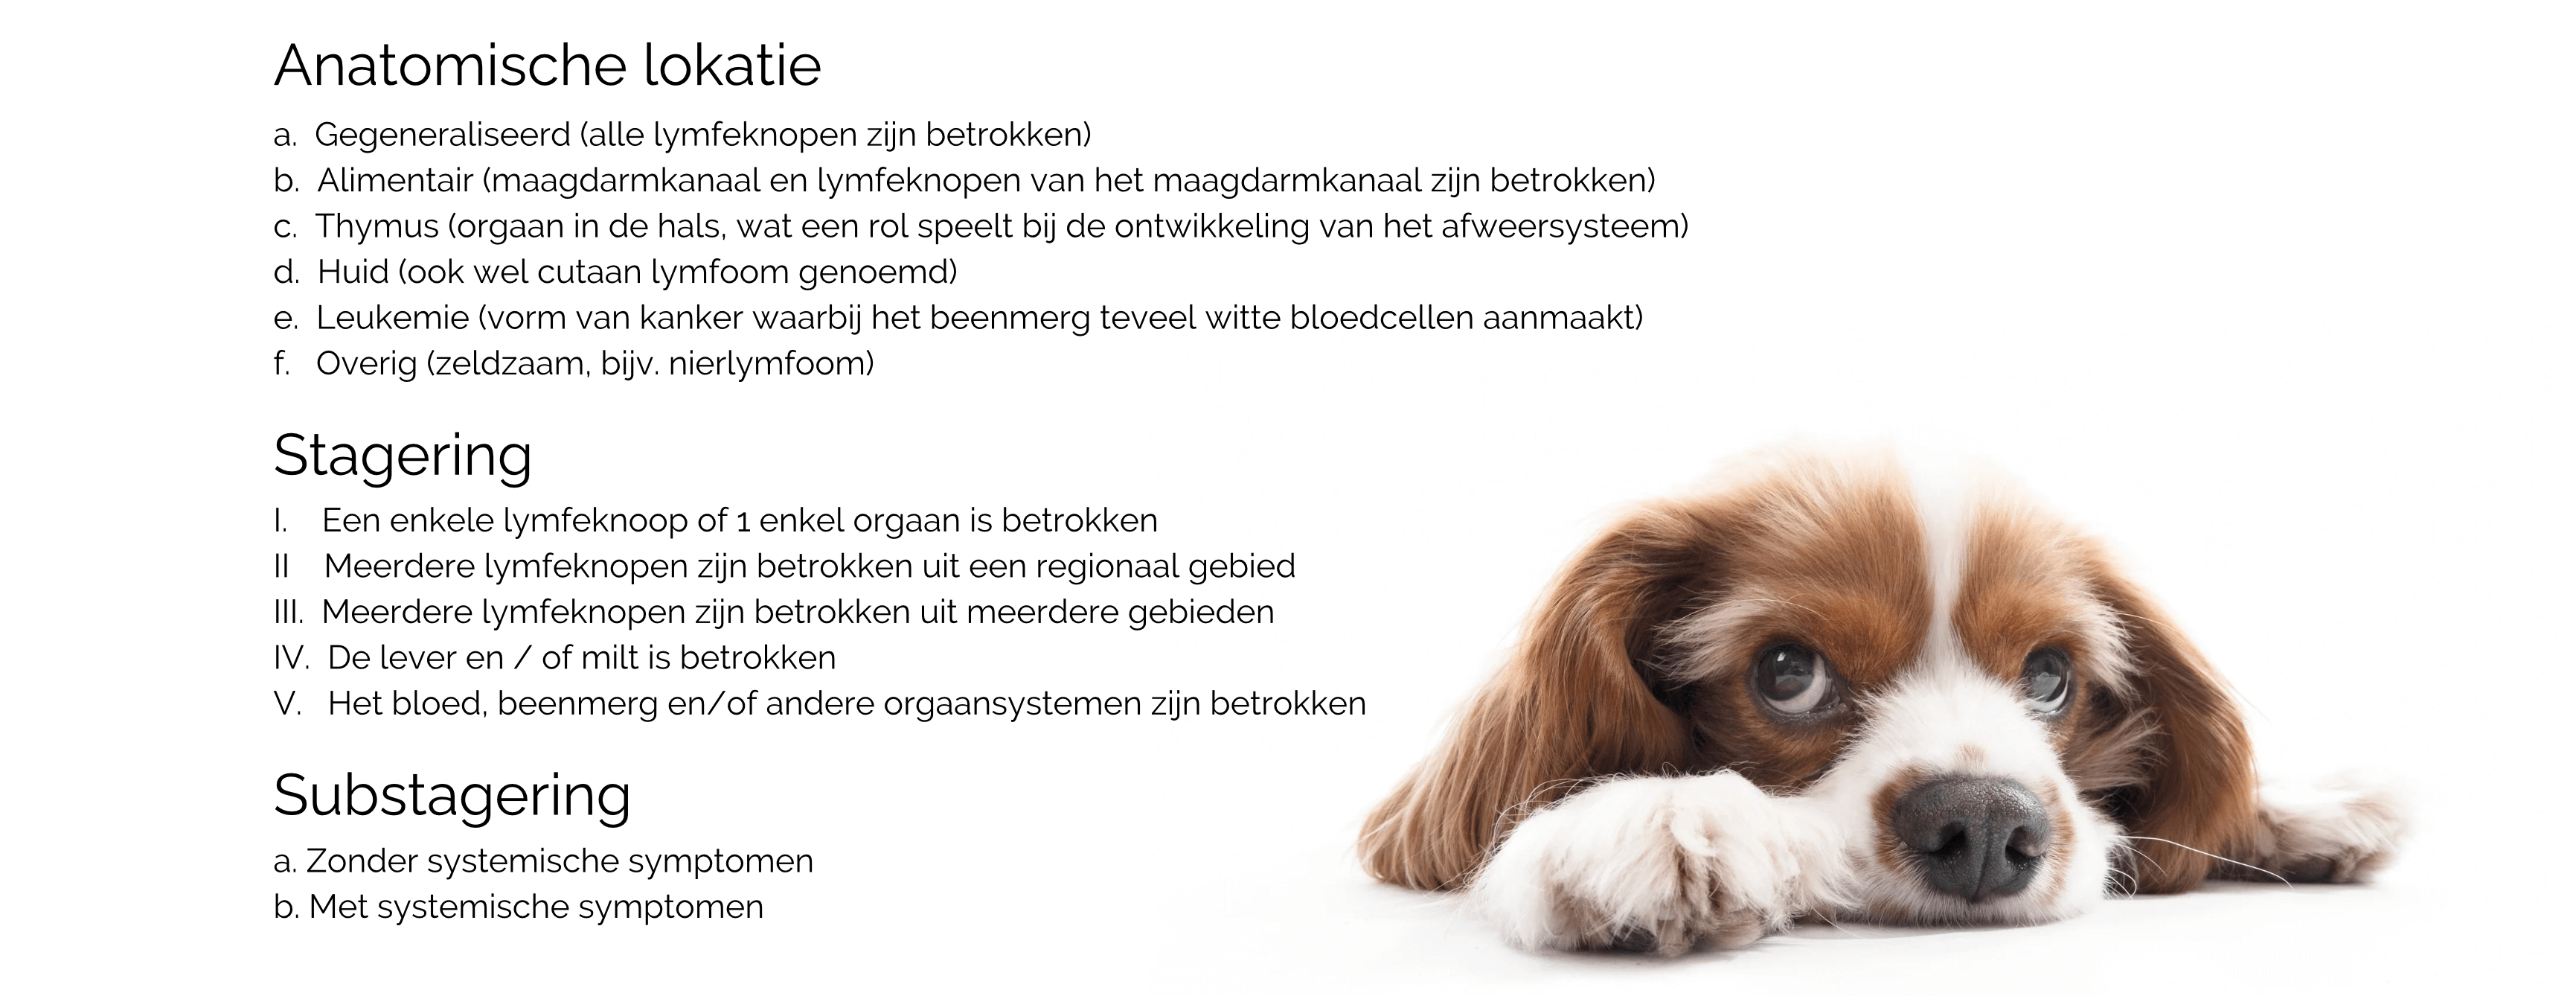 Lymfeklierkanker bij de hond